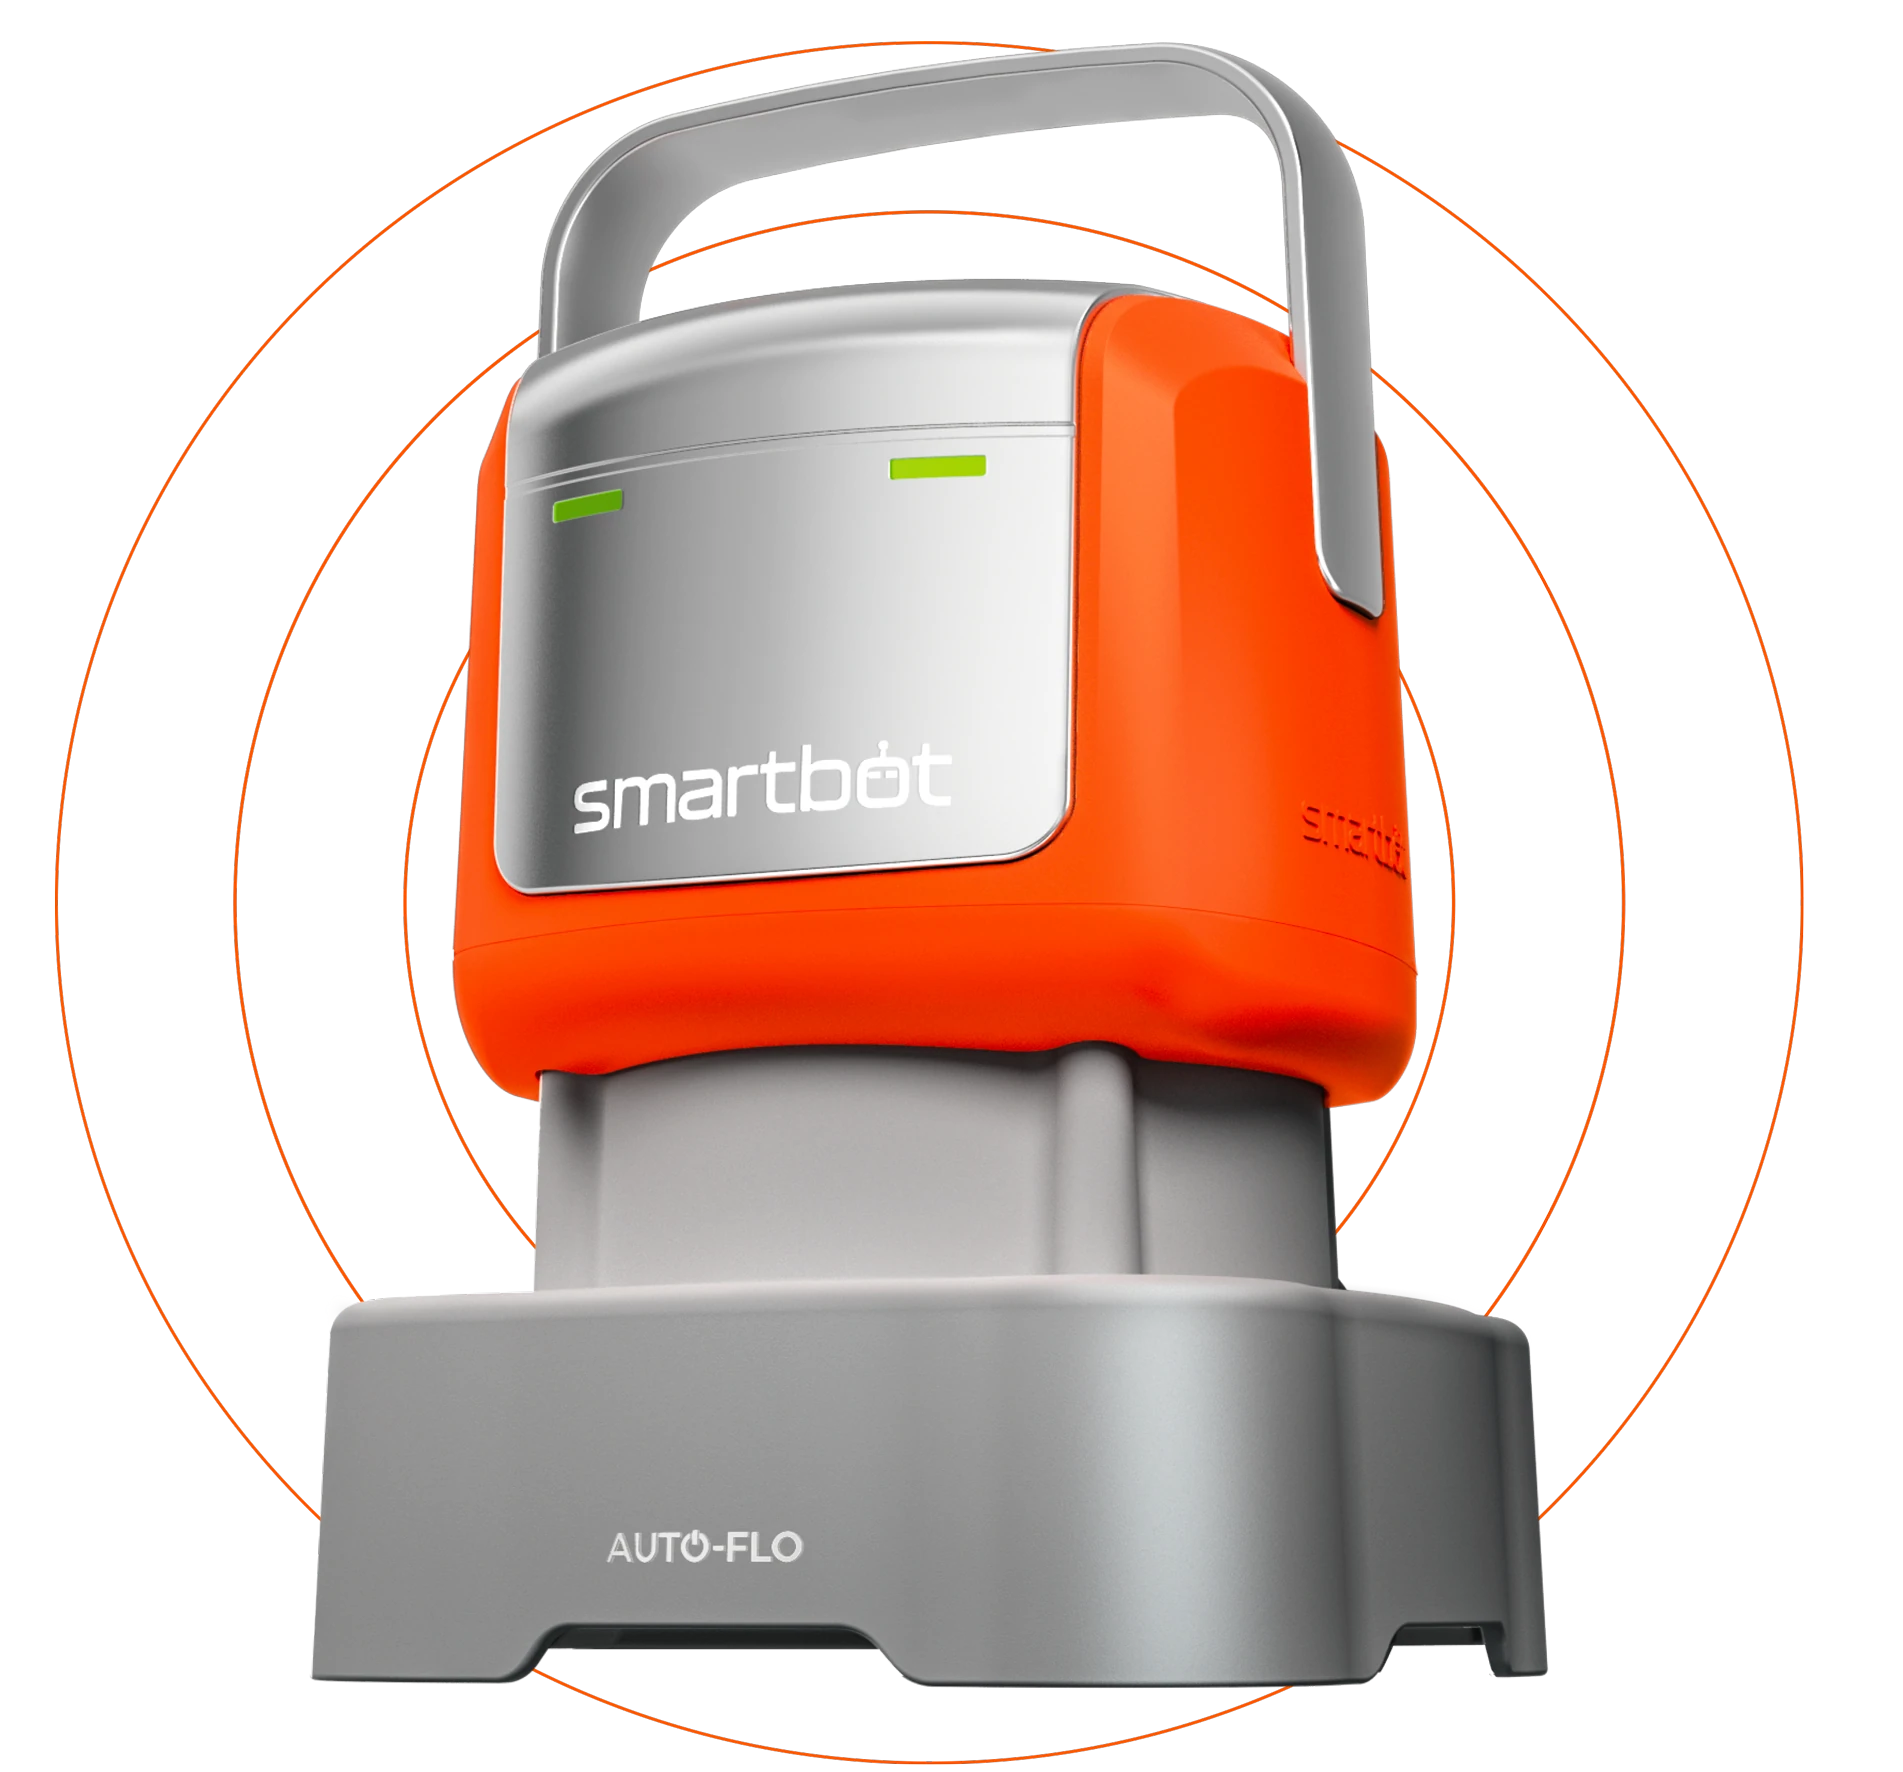 Smartbot in orange